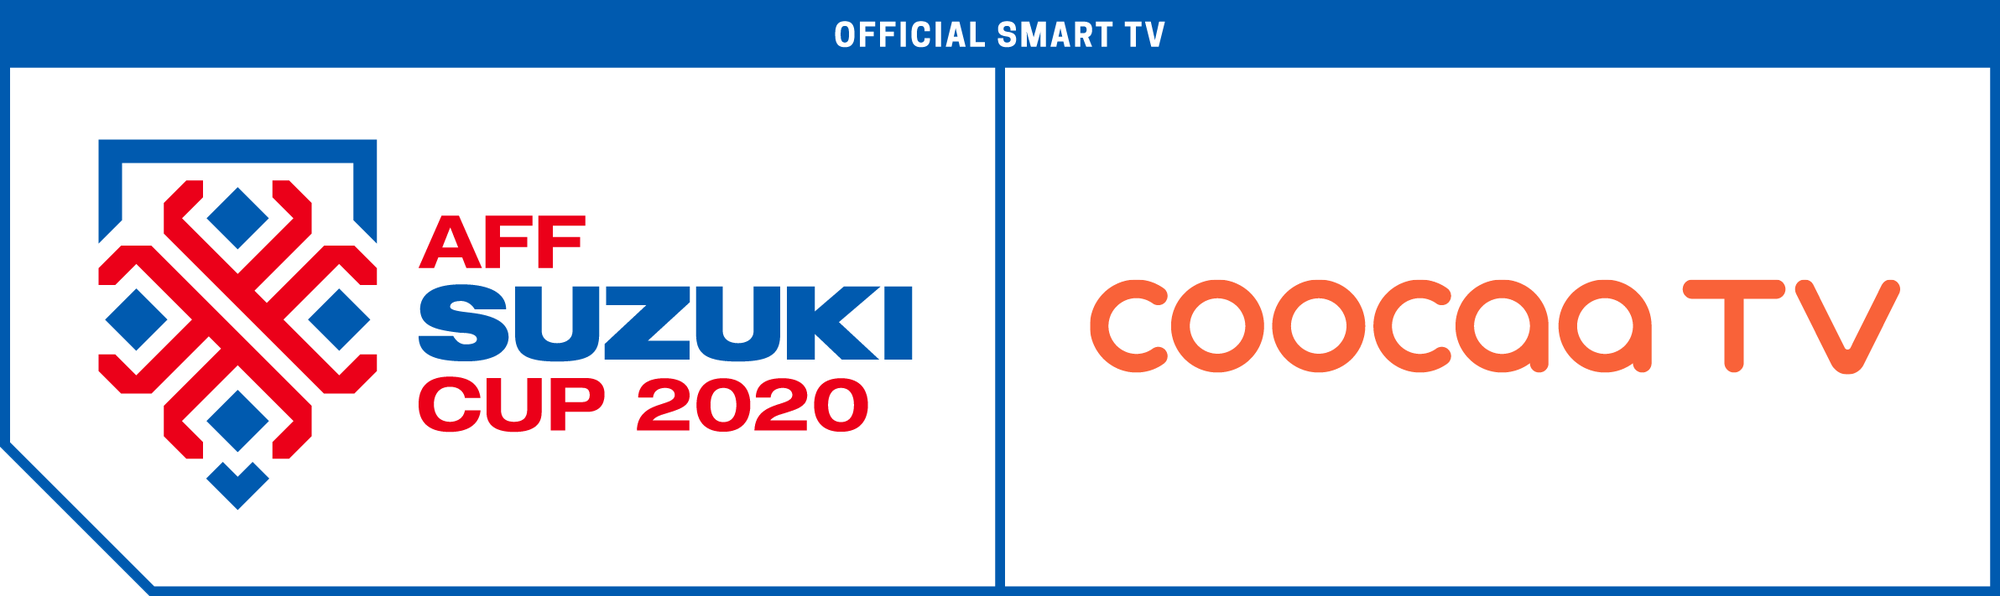 coocaa TV đồng hành cùng AFF Suzuki Cup 2020 - Ảnh 1.